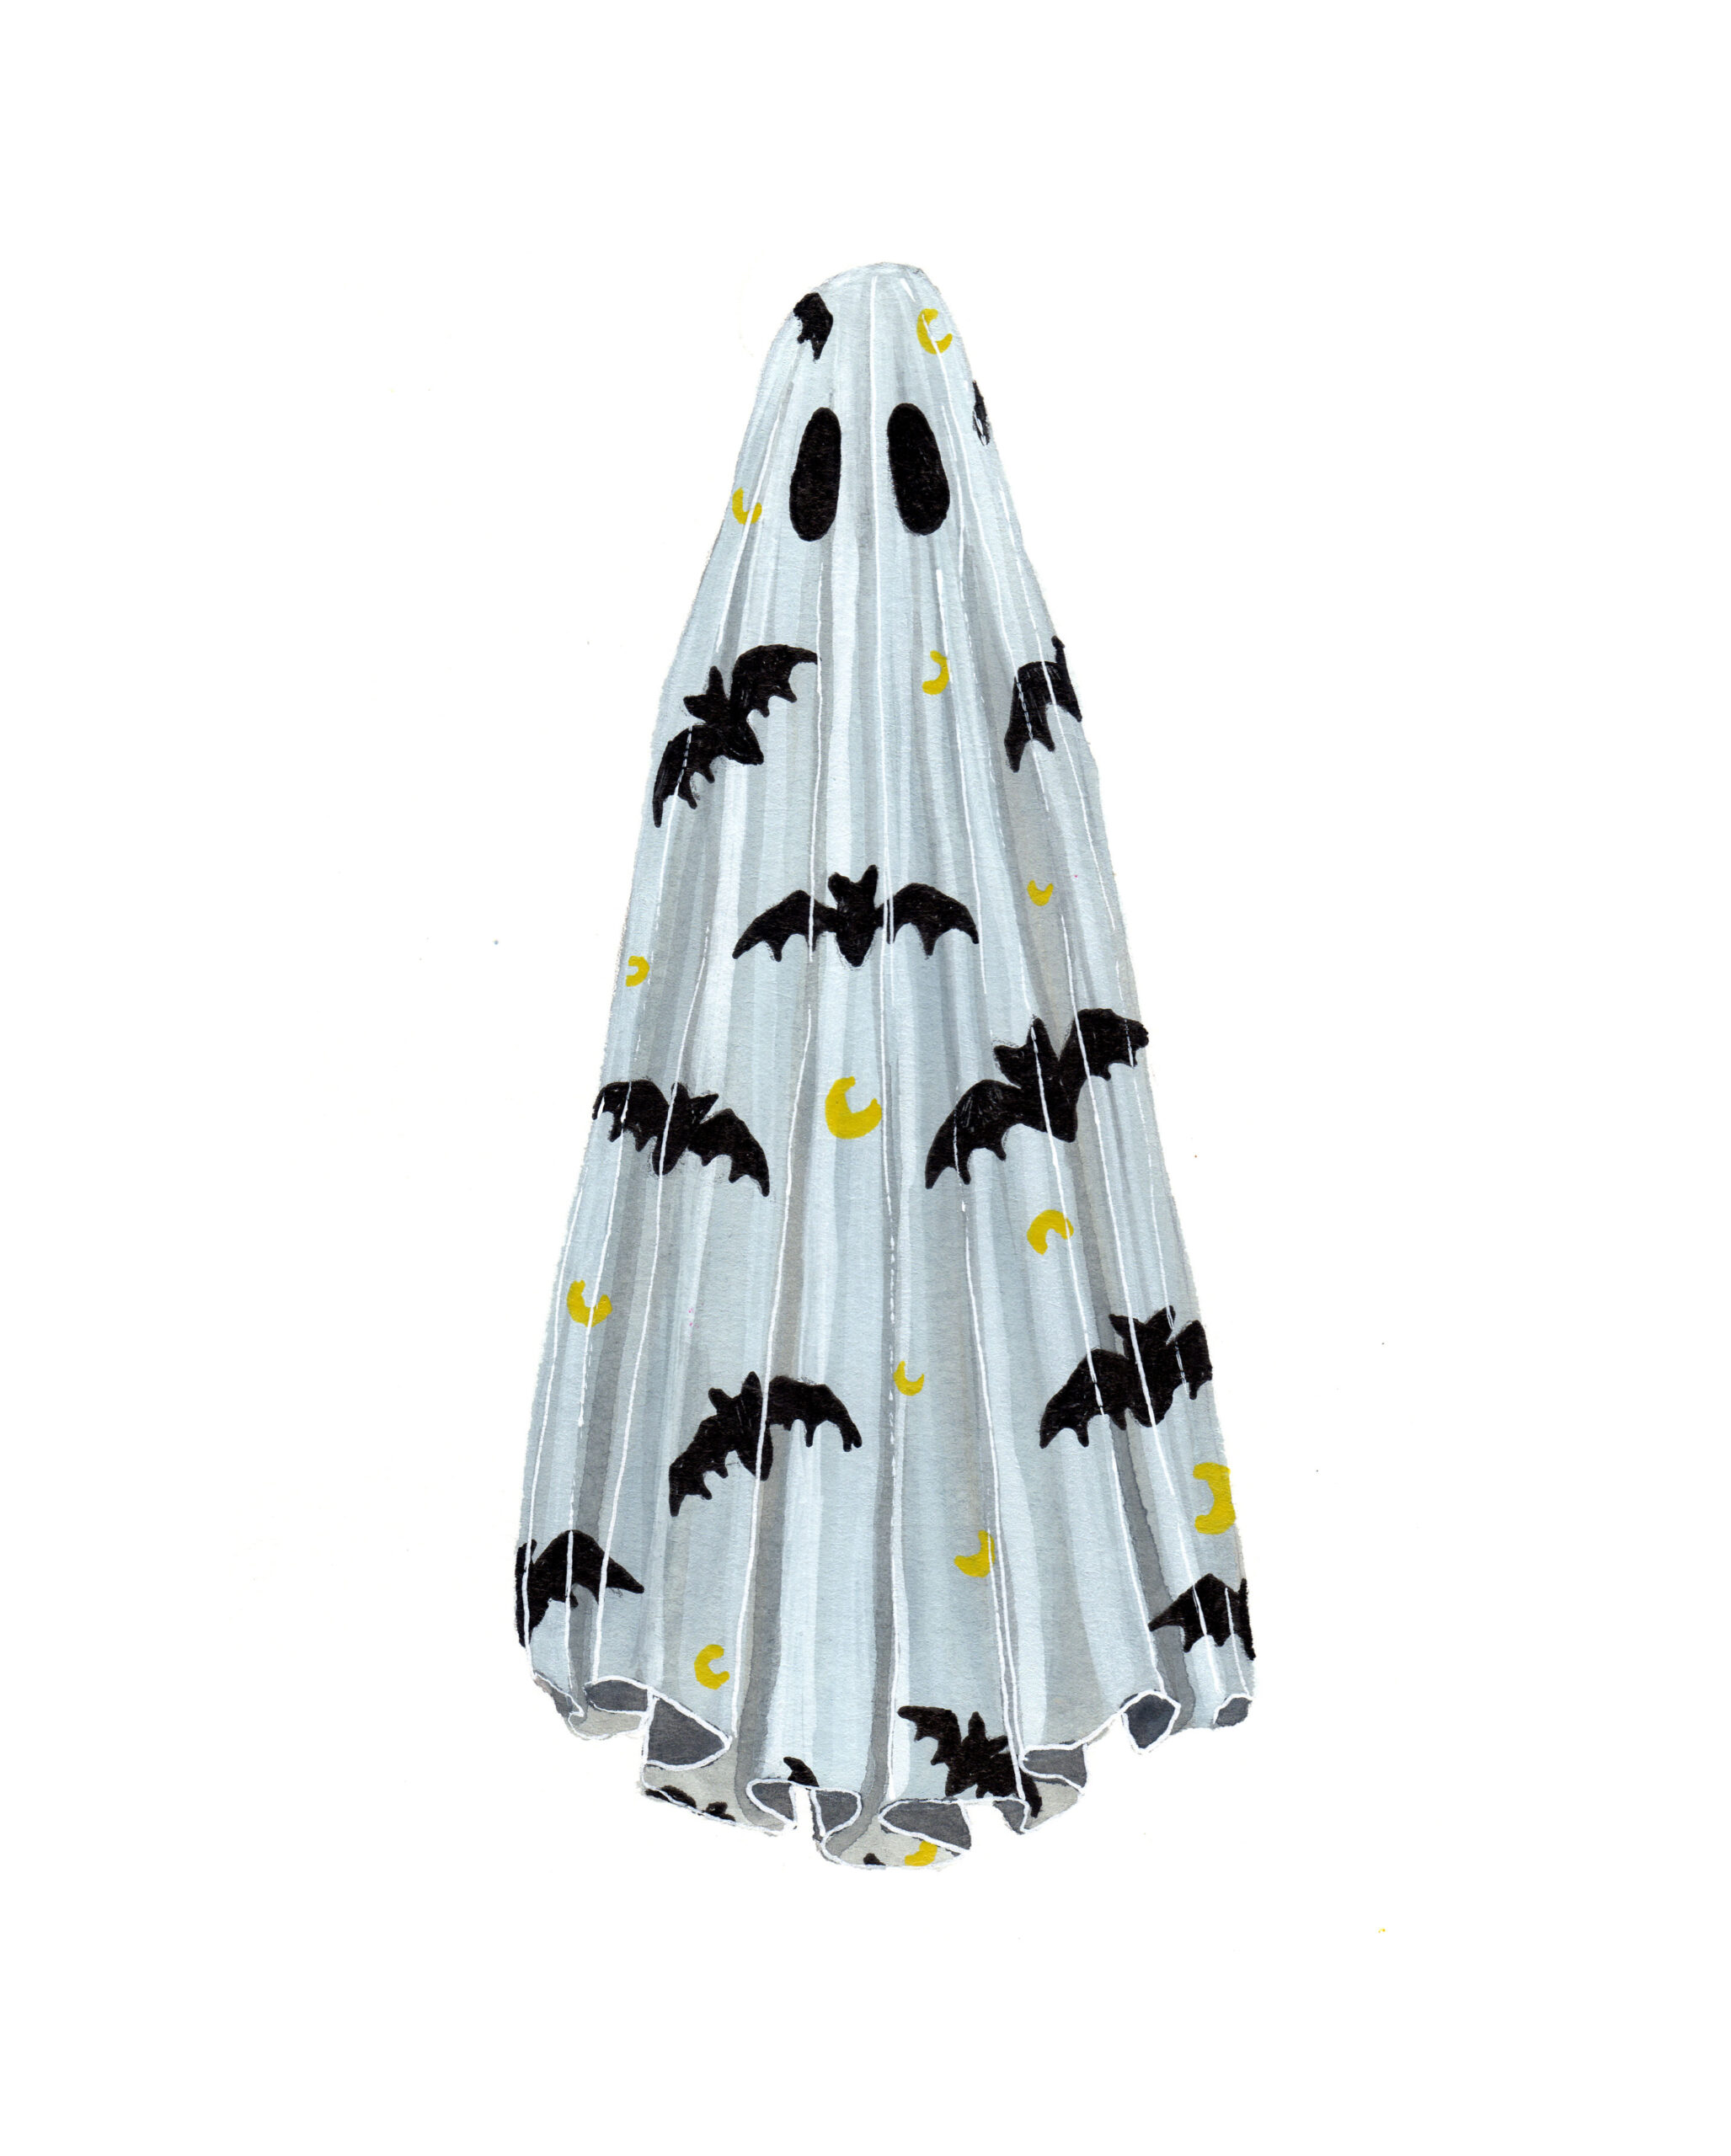 ghostober2022-25-bats